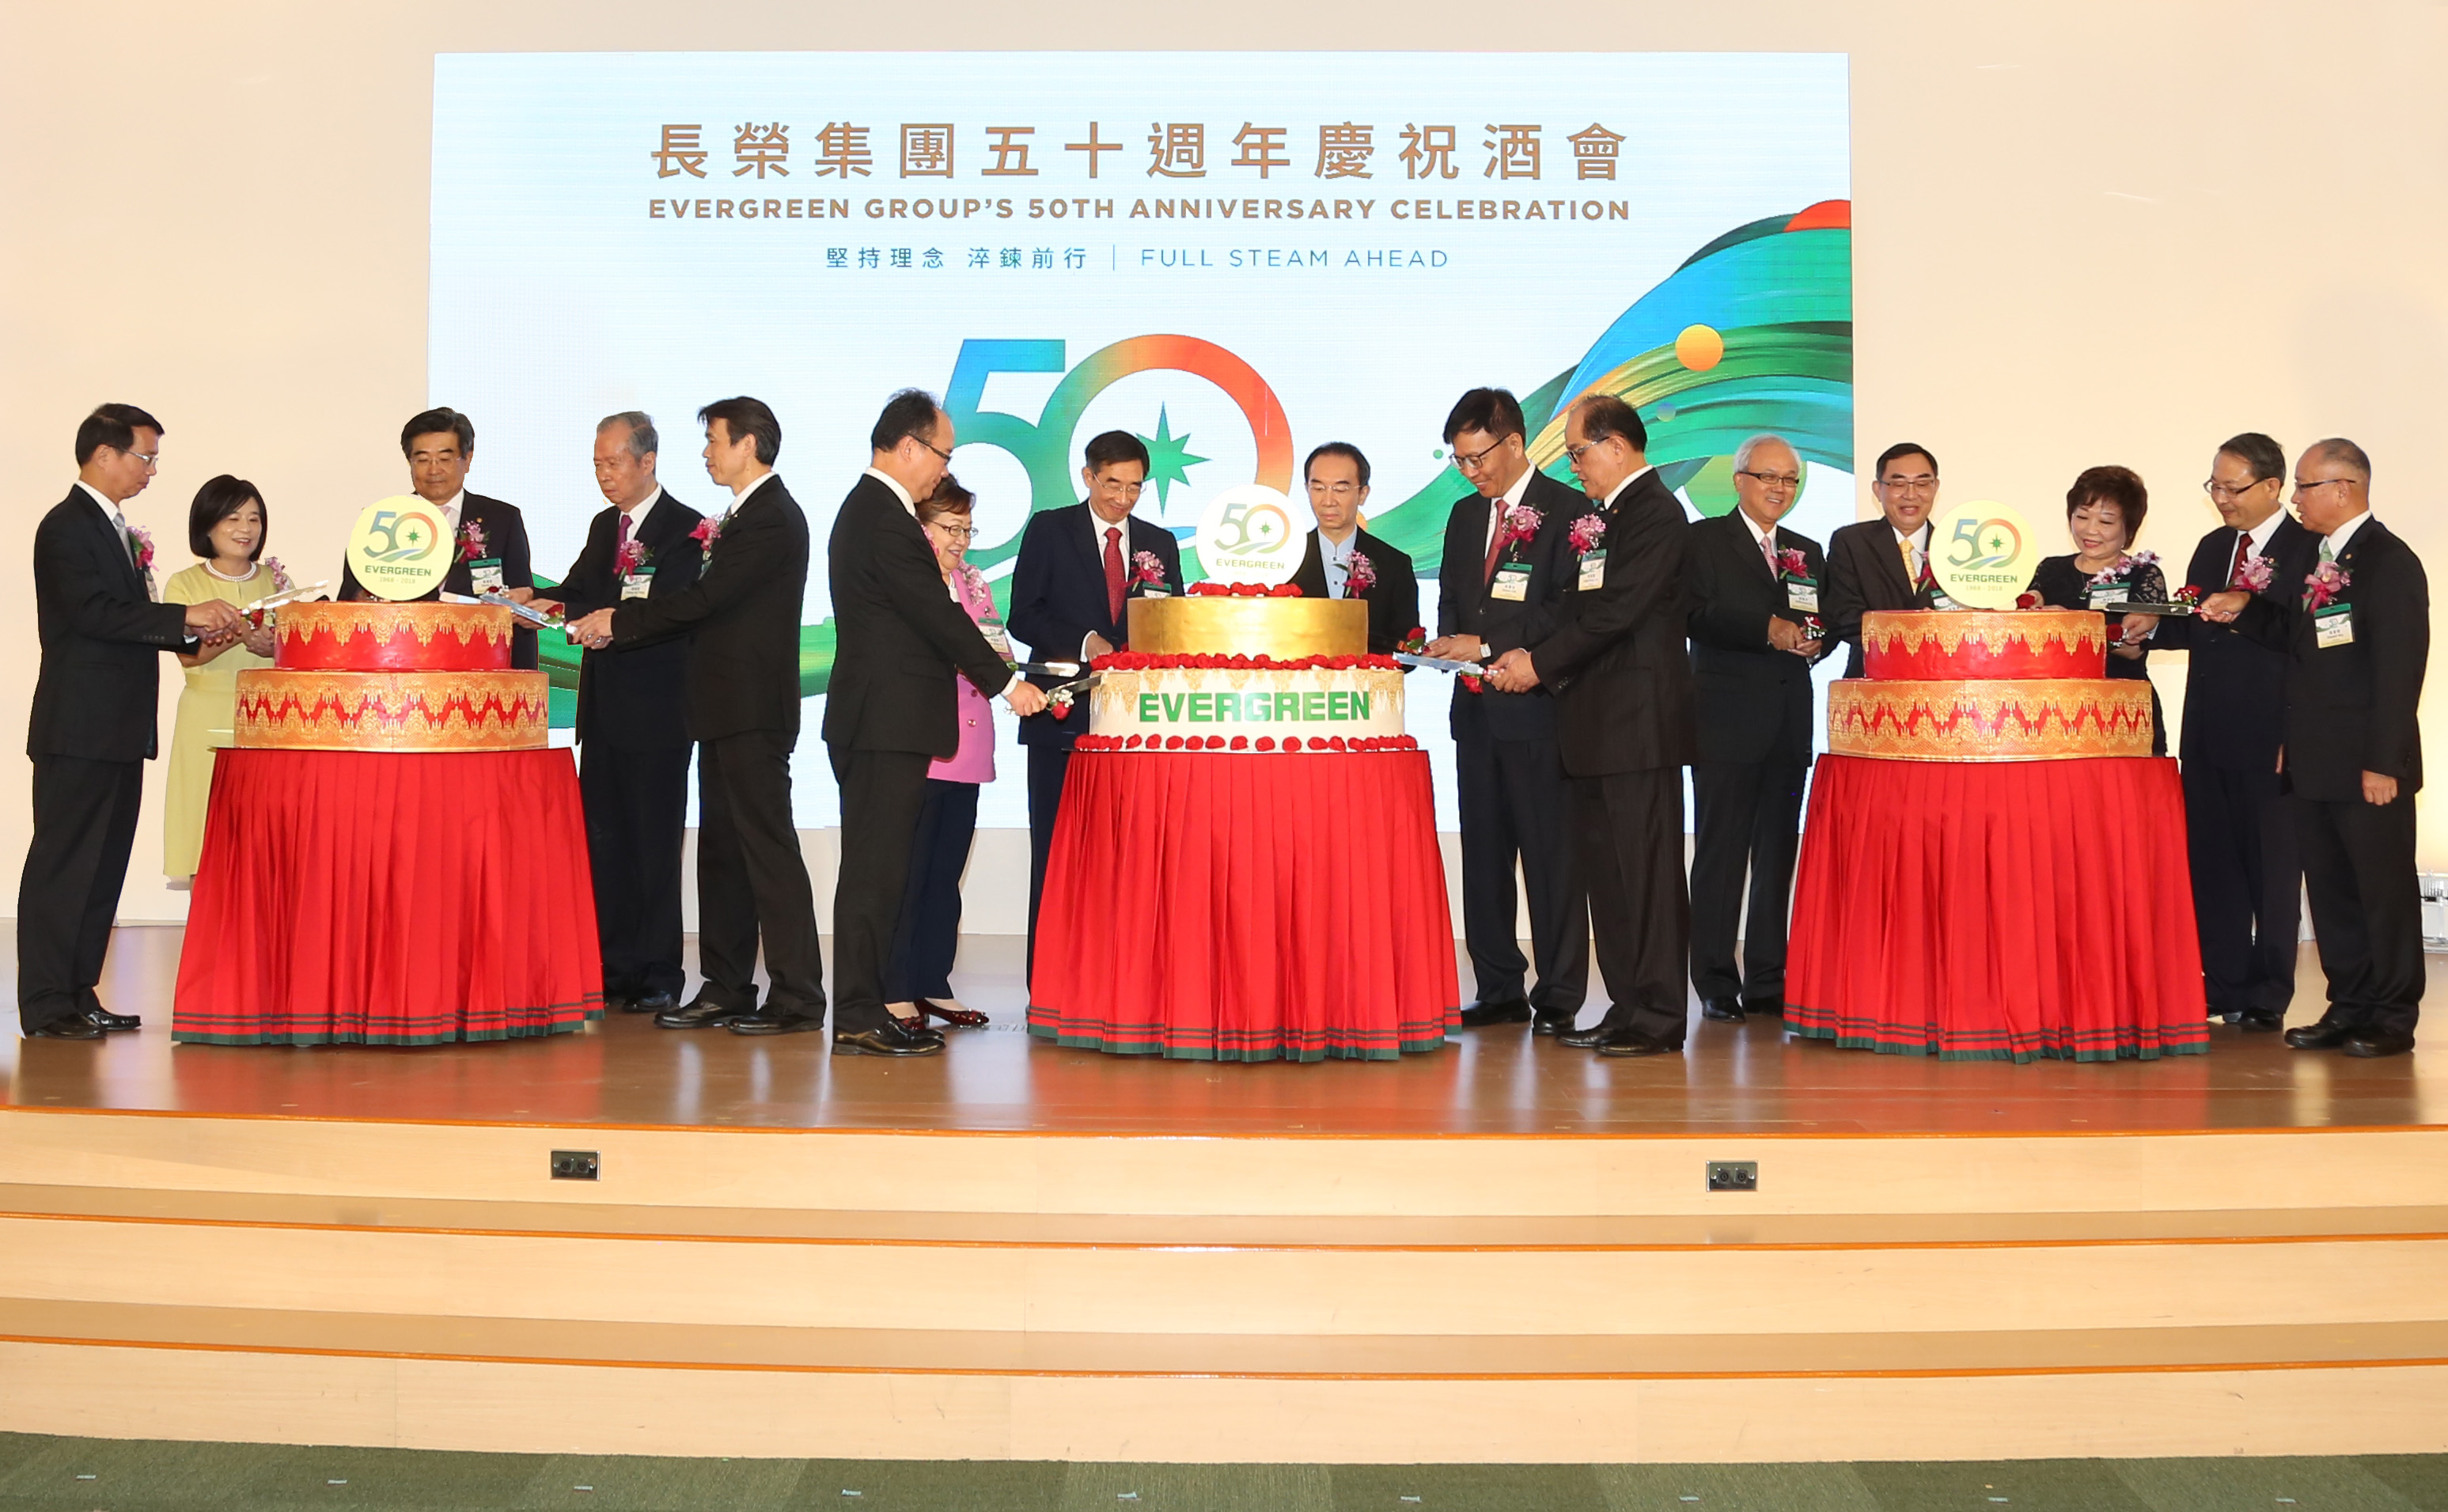 Taiwanesische Evergreen Group strebt nach weiterem Wachstum